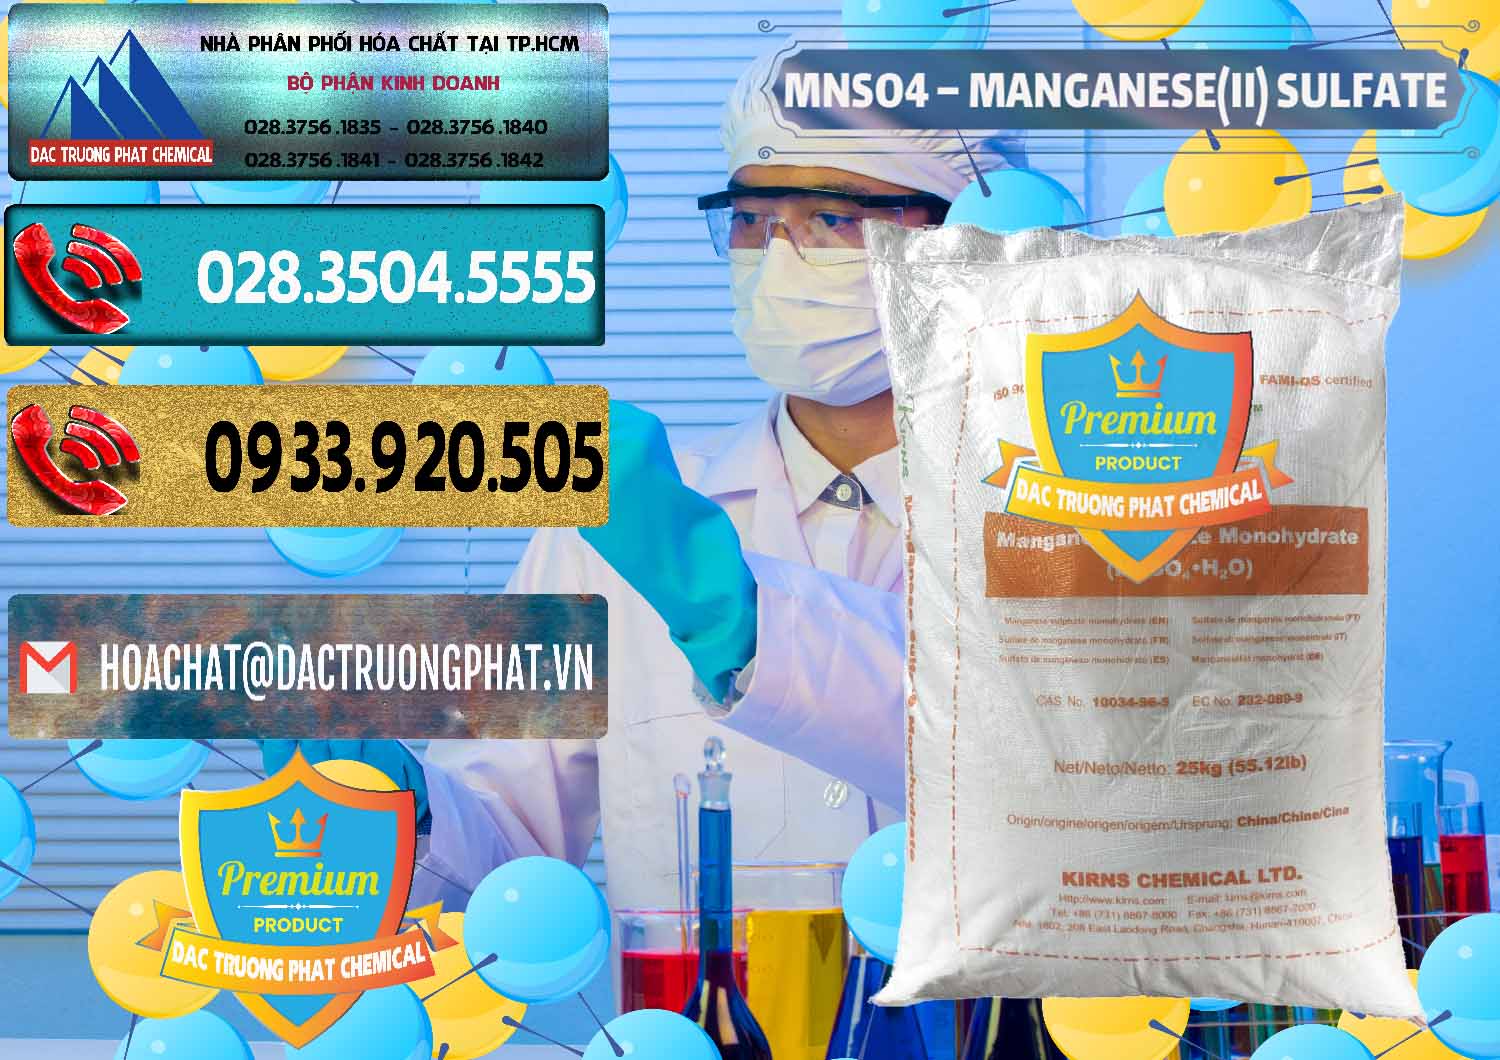 Chuyên nhập khẩu - bán MNSO4 – Manganese (II) Sulfate Kirns Trung Quốc China - 0095 - Đơn vị kinh doanh - phân phối hóa chất tại TP.HCM - hoachatdetnhuom.com